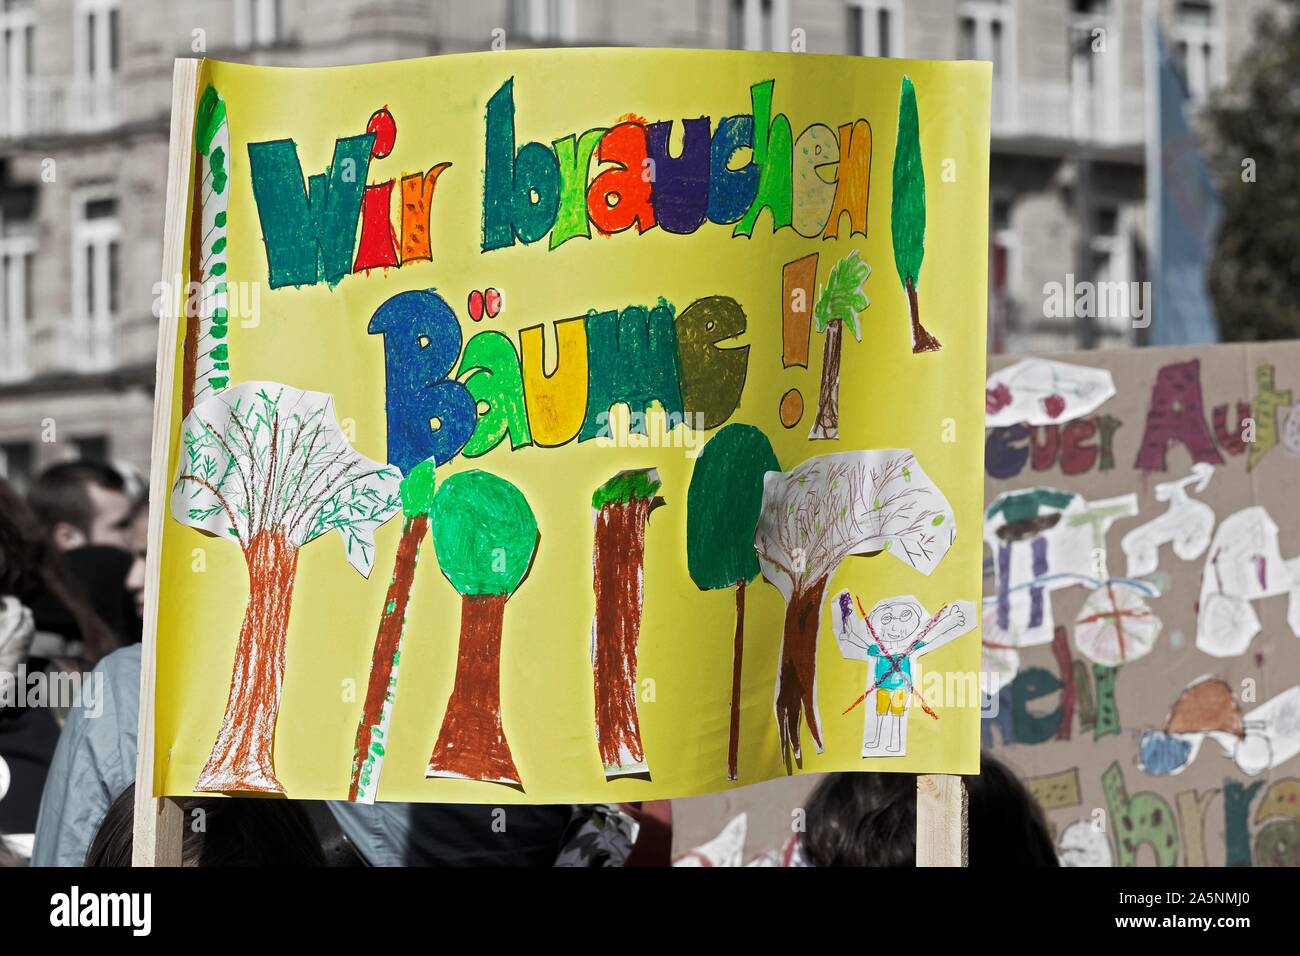 Bannière pour la protection de l'environnement, les arbres, la démonstration des enfants et des jeunes pour la protection du climat, l'avenir, pour le vendredi 20 septembre 2019 Banque D'Images